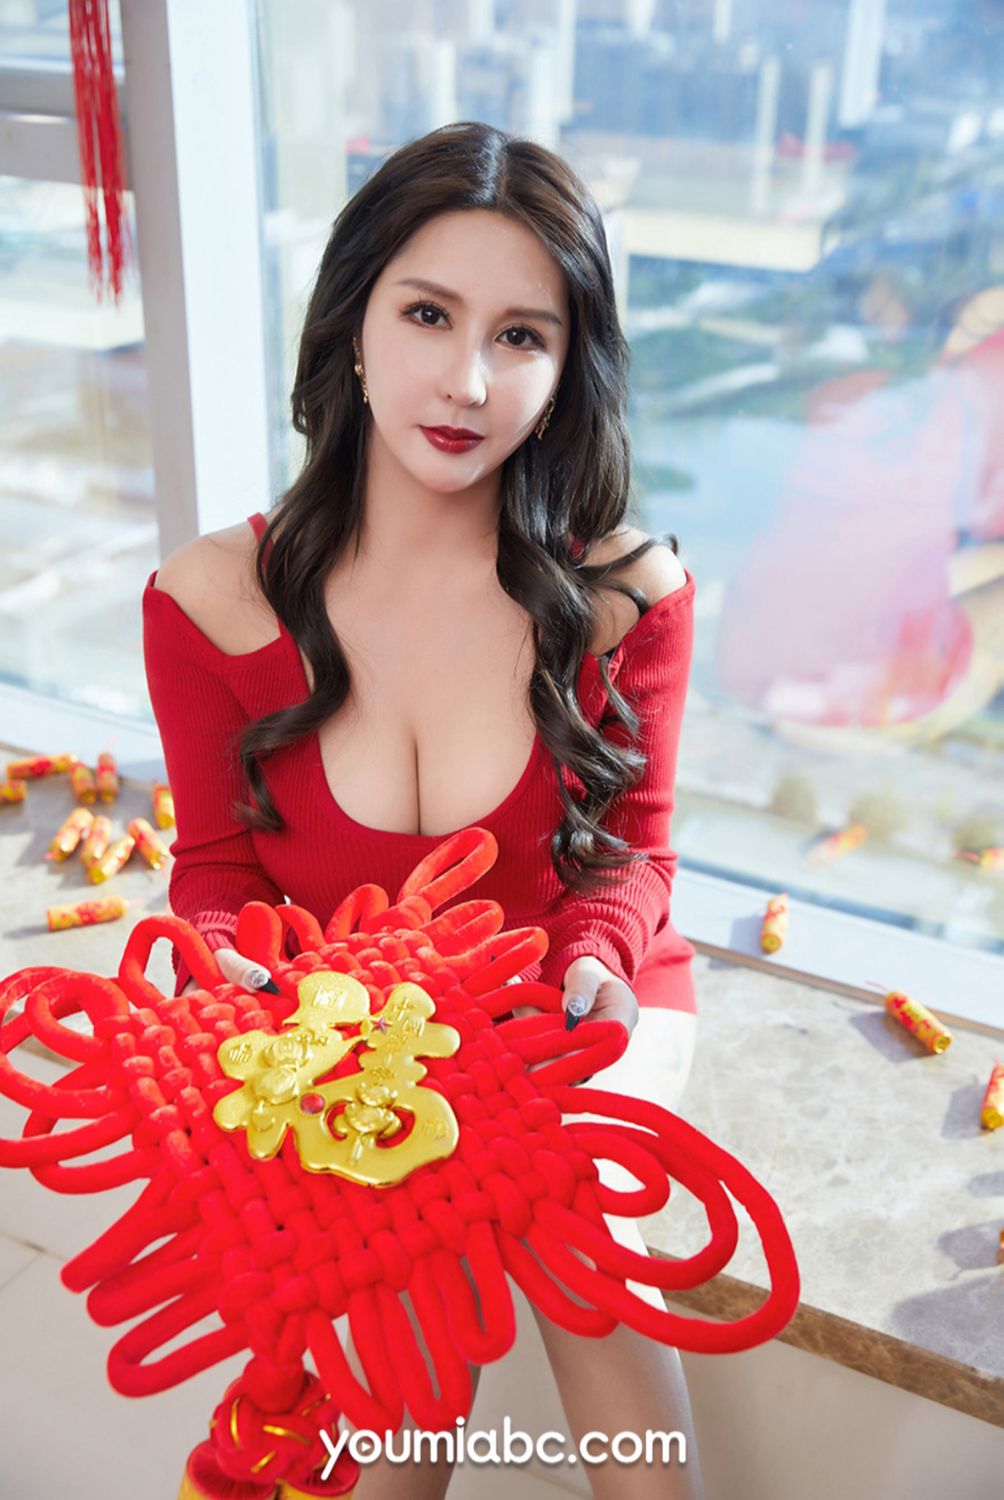 美女模特娜依灵儿红色短裙+糖葫芦系列性感写真